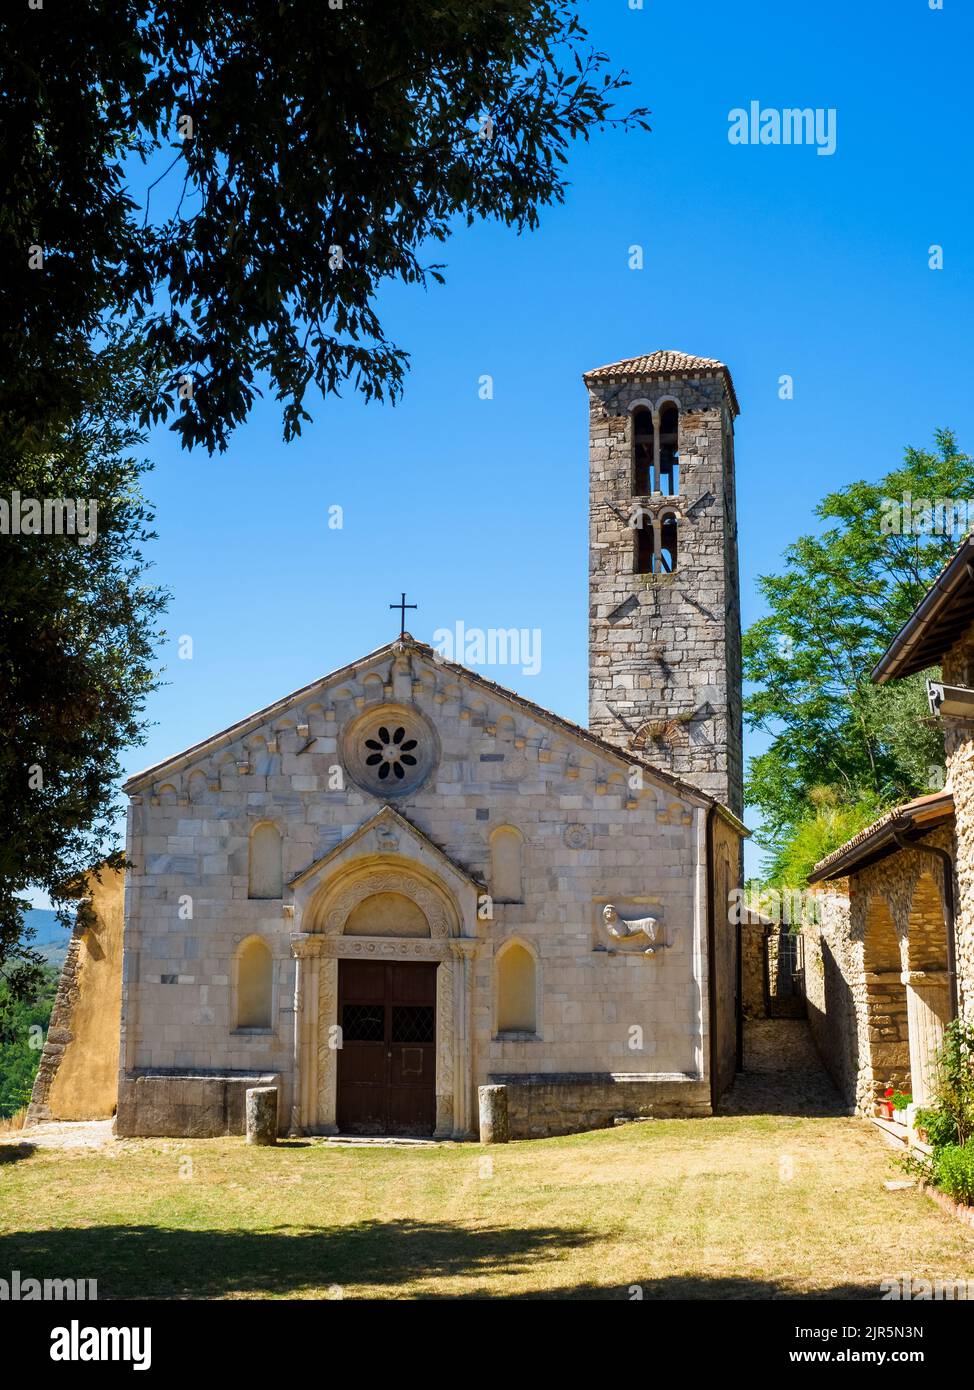 Santuario de Santa Vittoria - Monteleone Sabino, Rieti, Italia Foto de stock